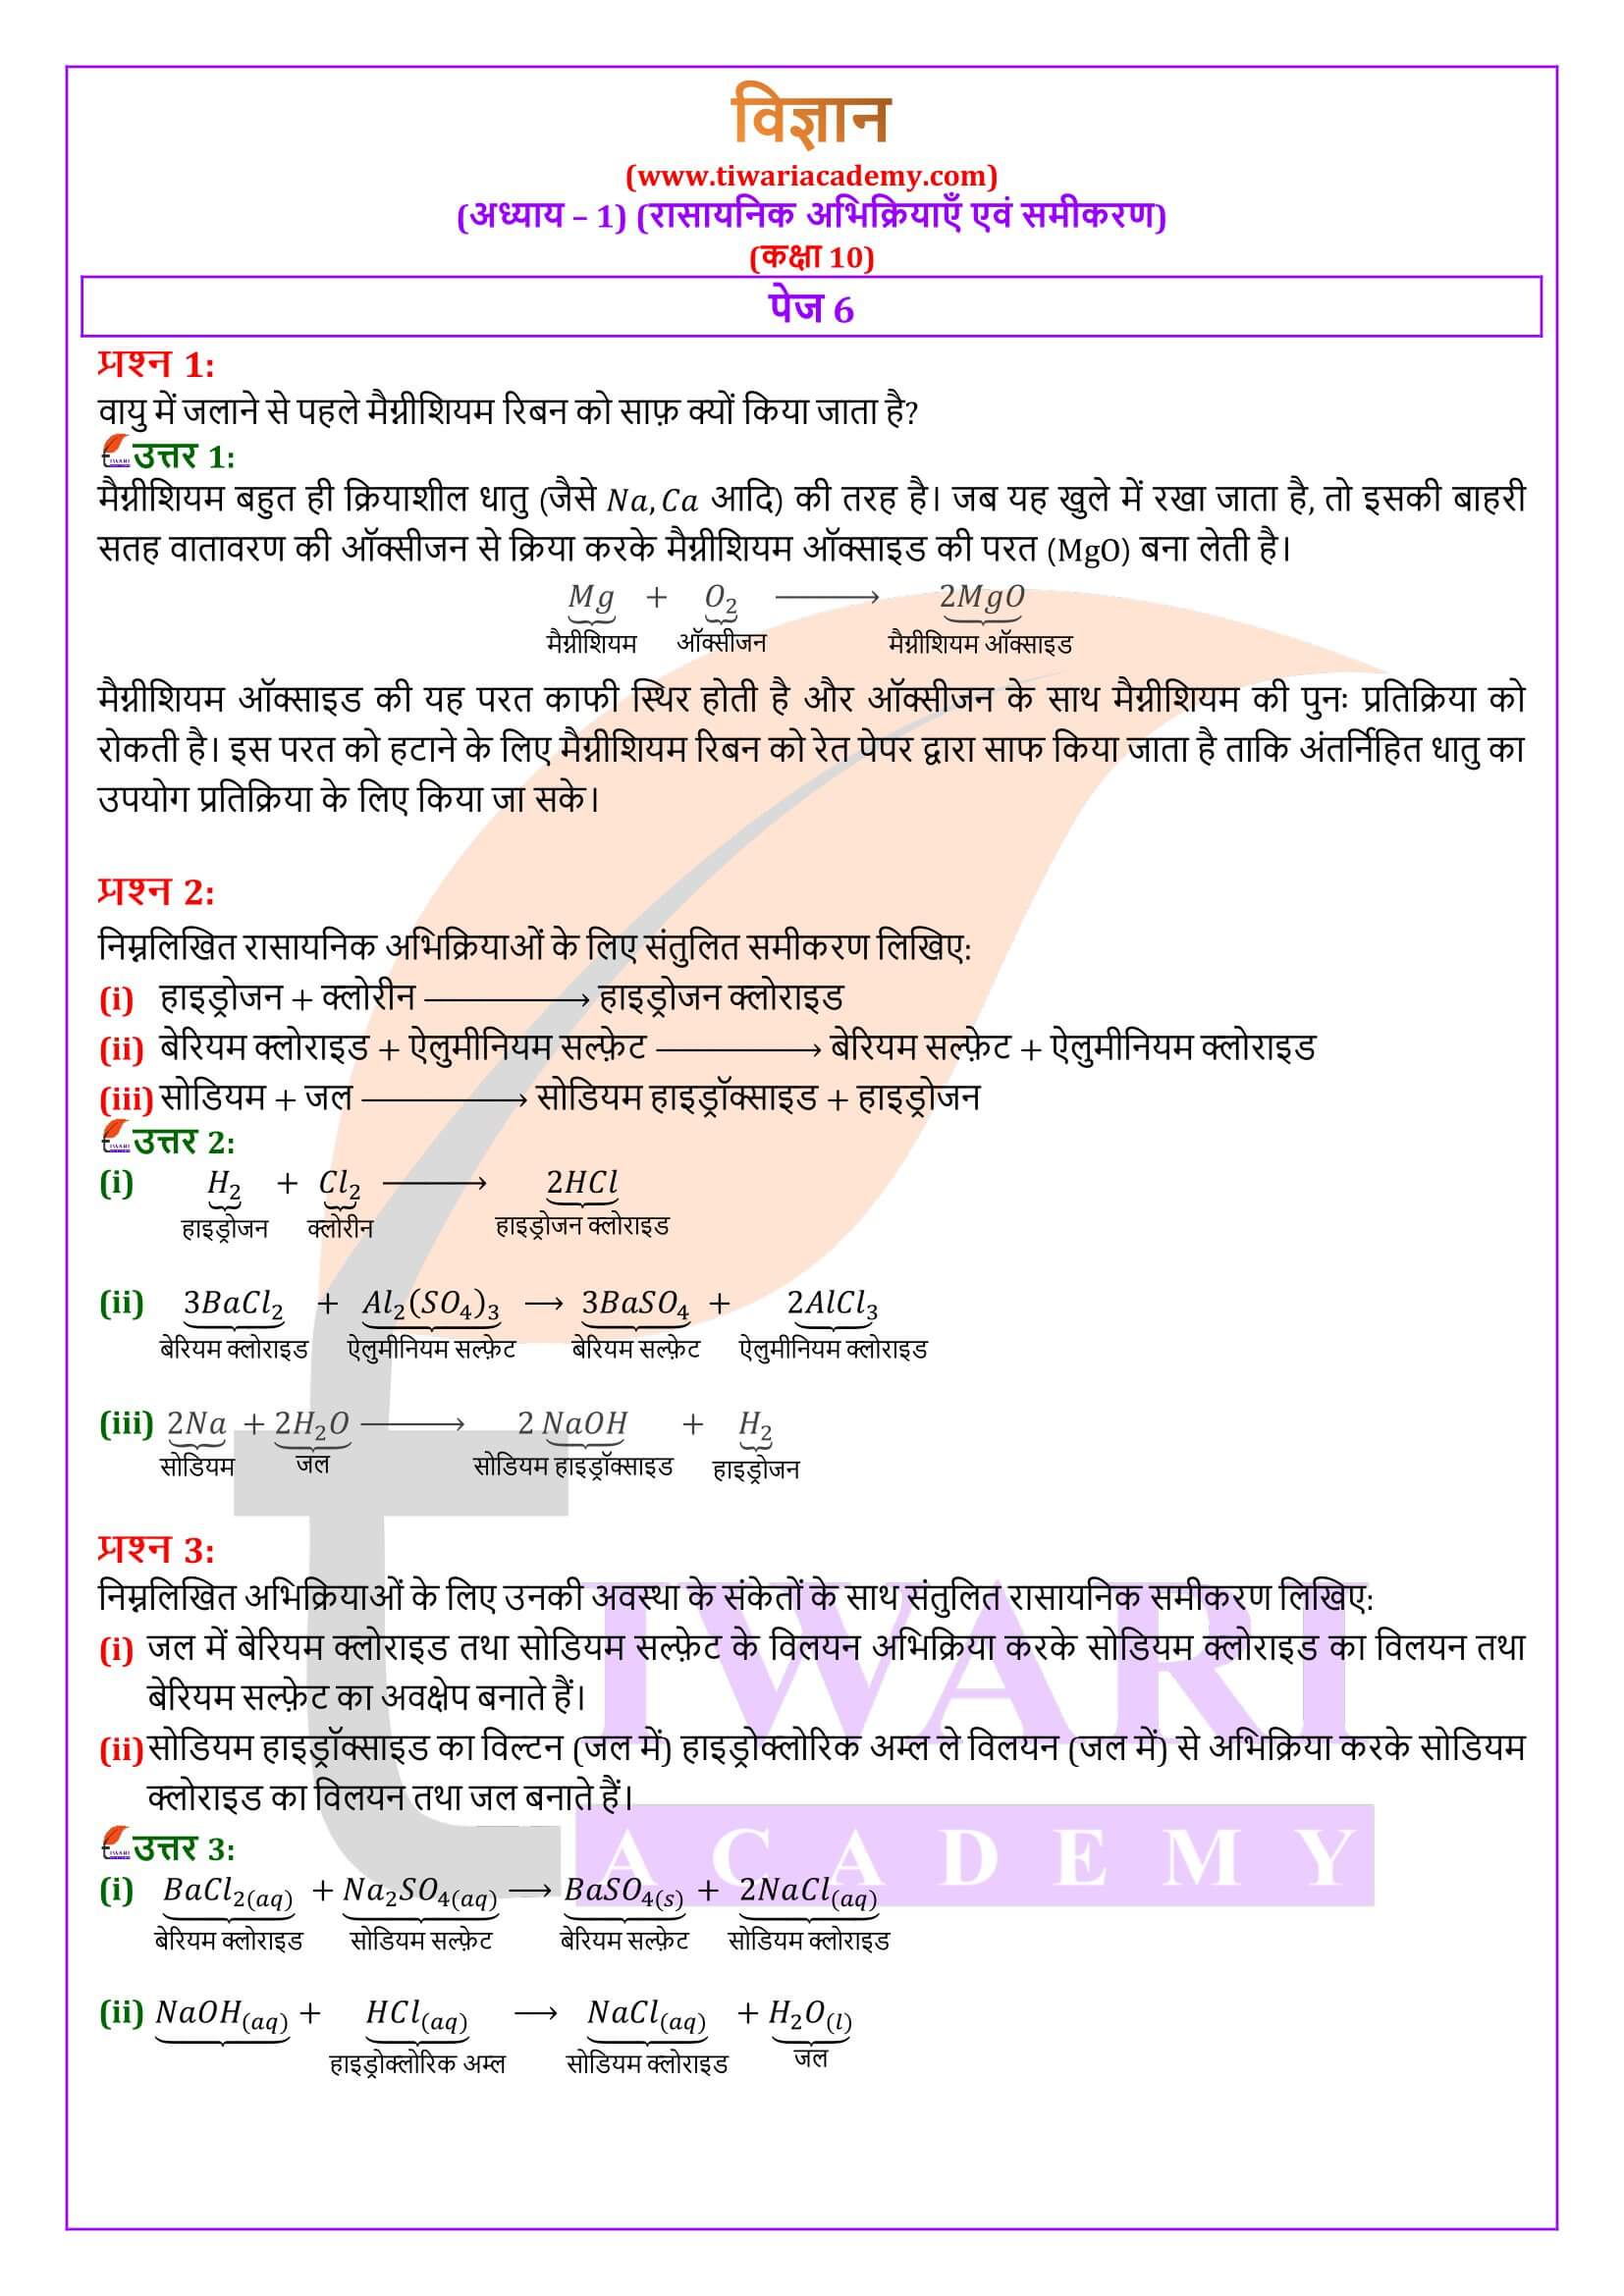 कक्षा 10 विज्ञान पाठ 1 के उत्तर हिंदी में